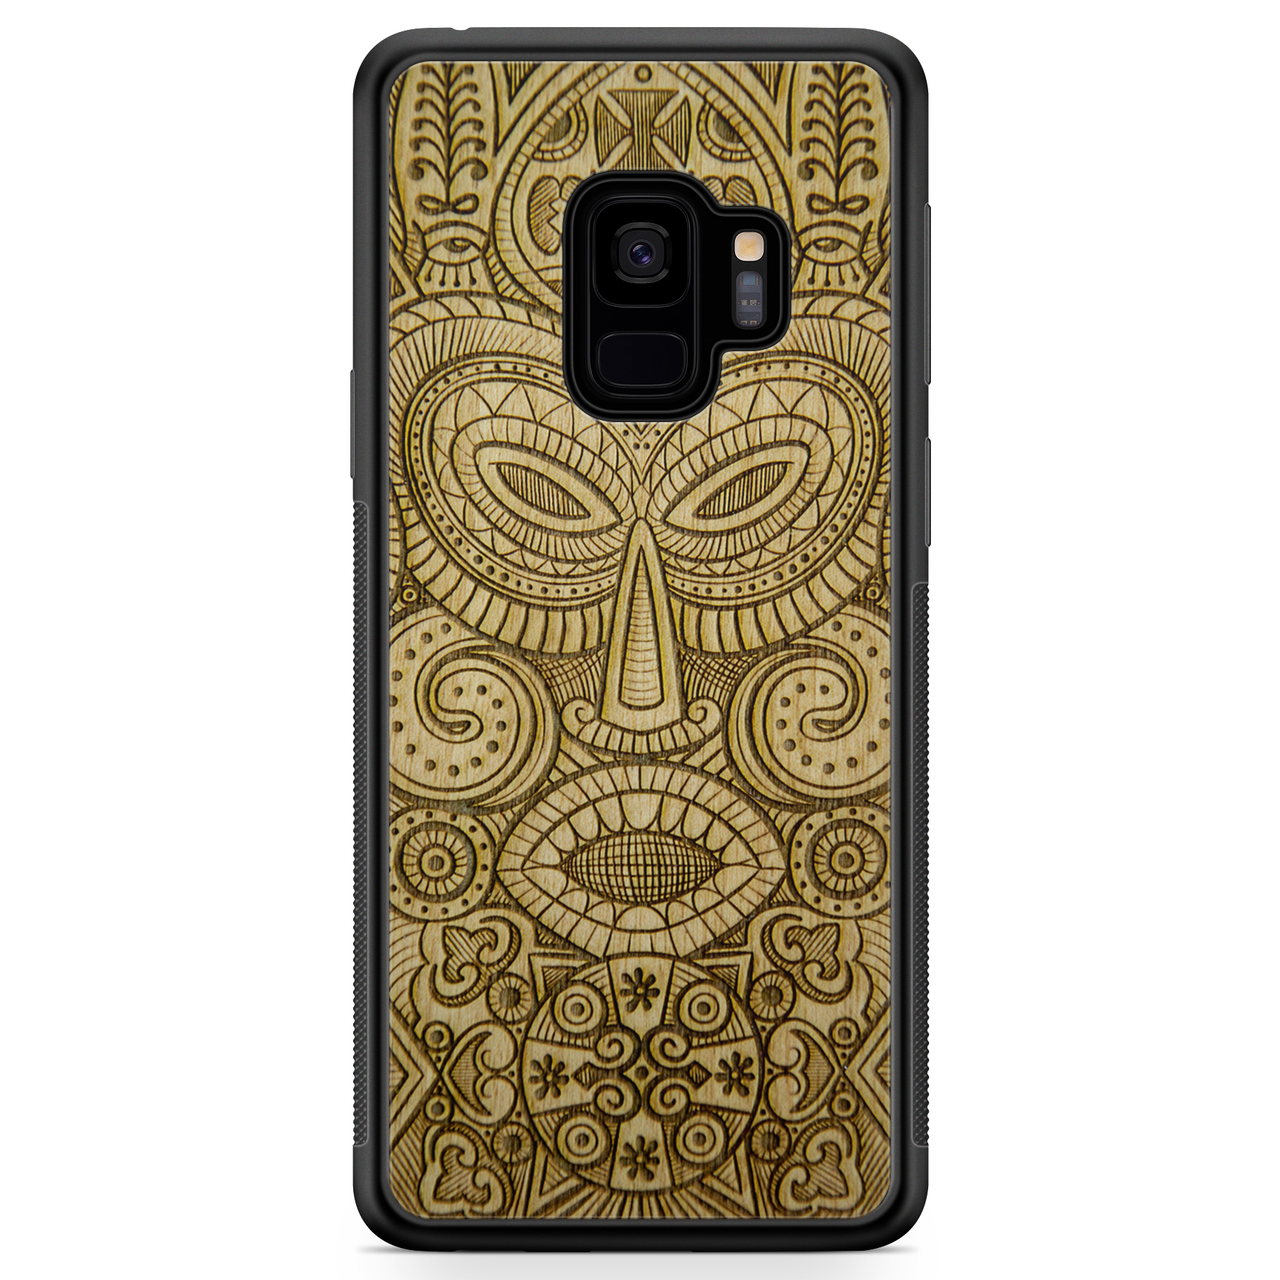 Деревянный чехол для телефона Samsung S9 Tribal Mask